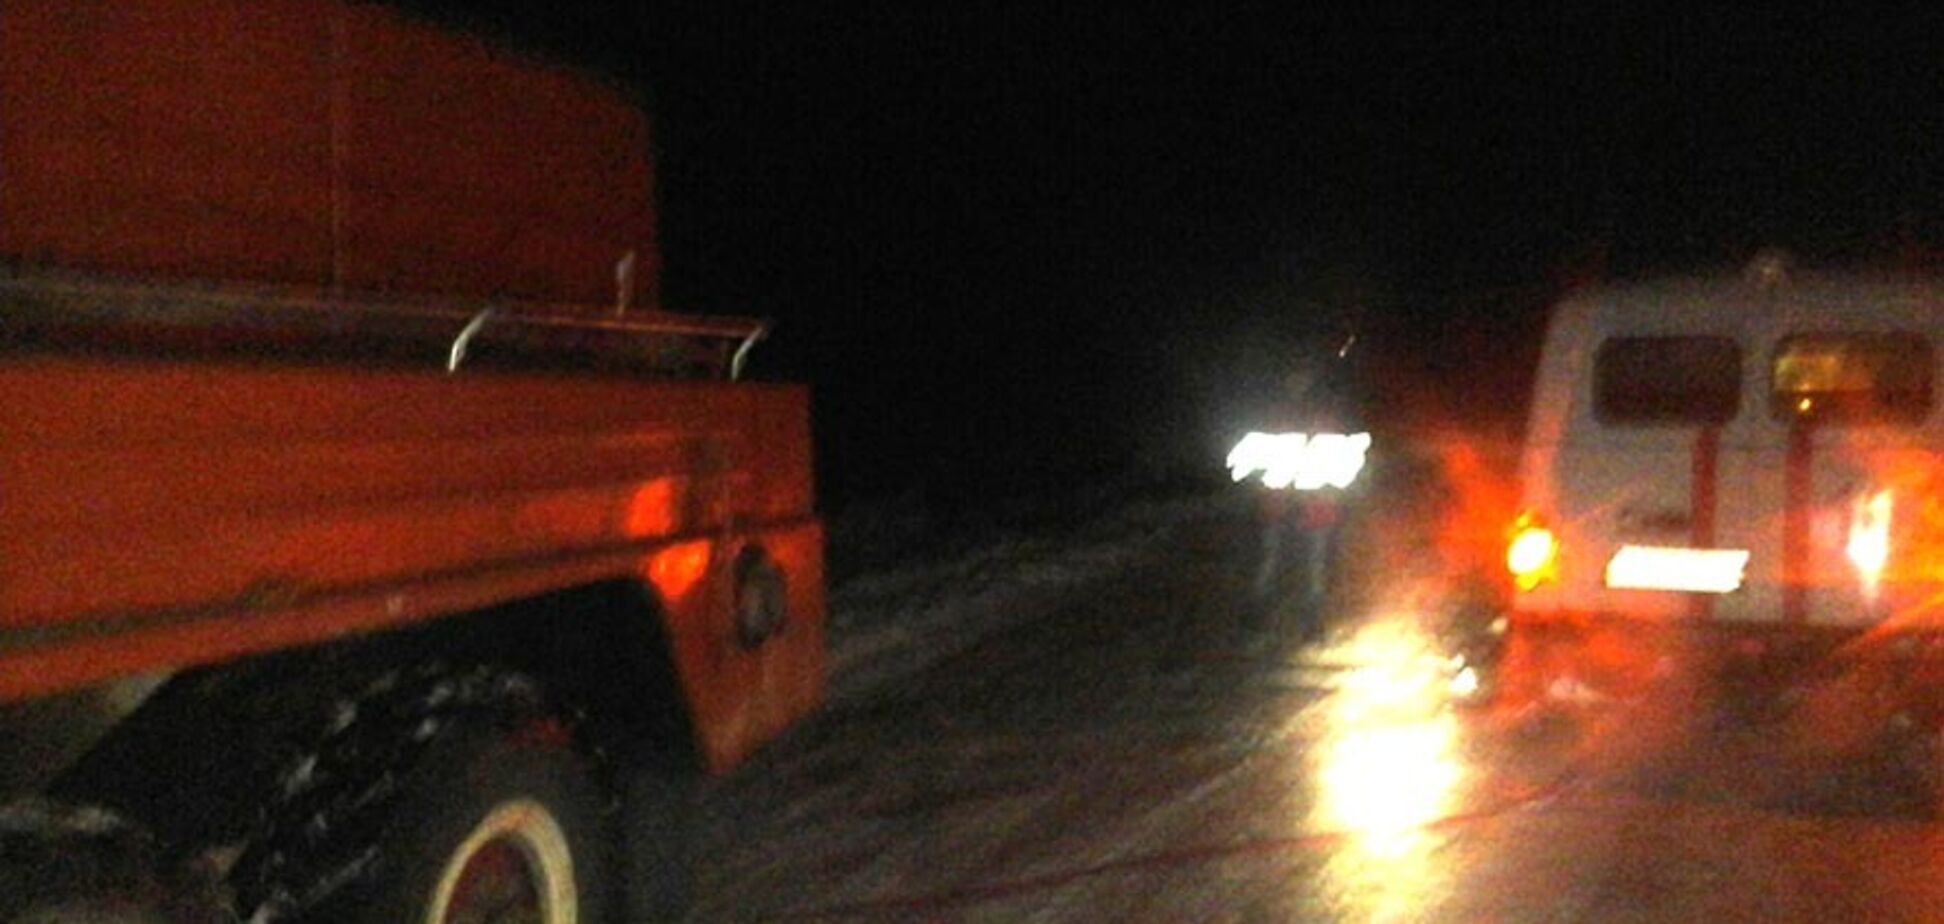 Снега по колено! Города Украины оказались в снежной ловушке. Фото и видео